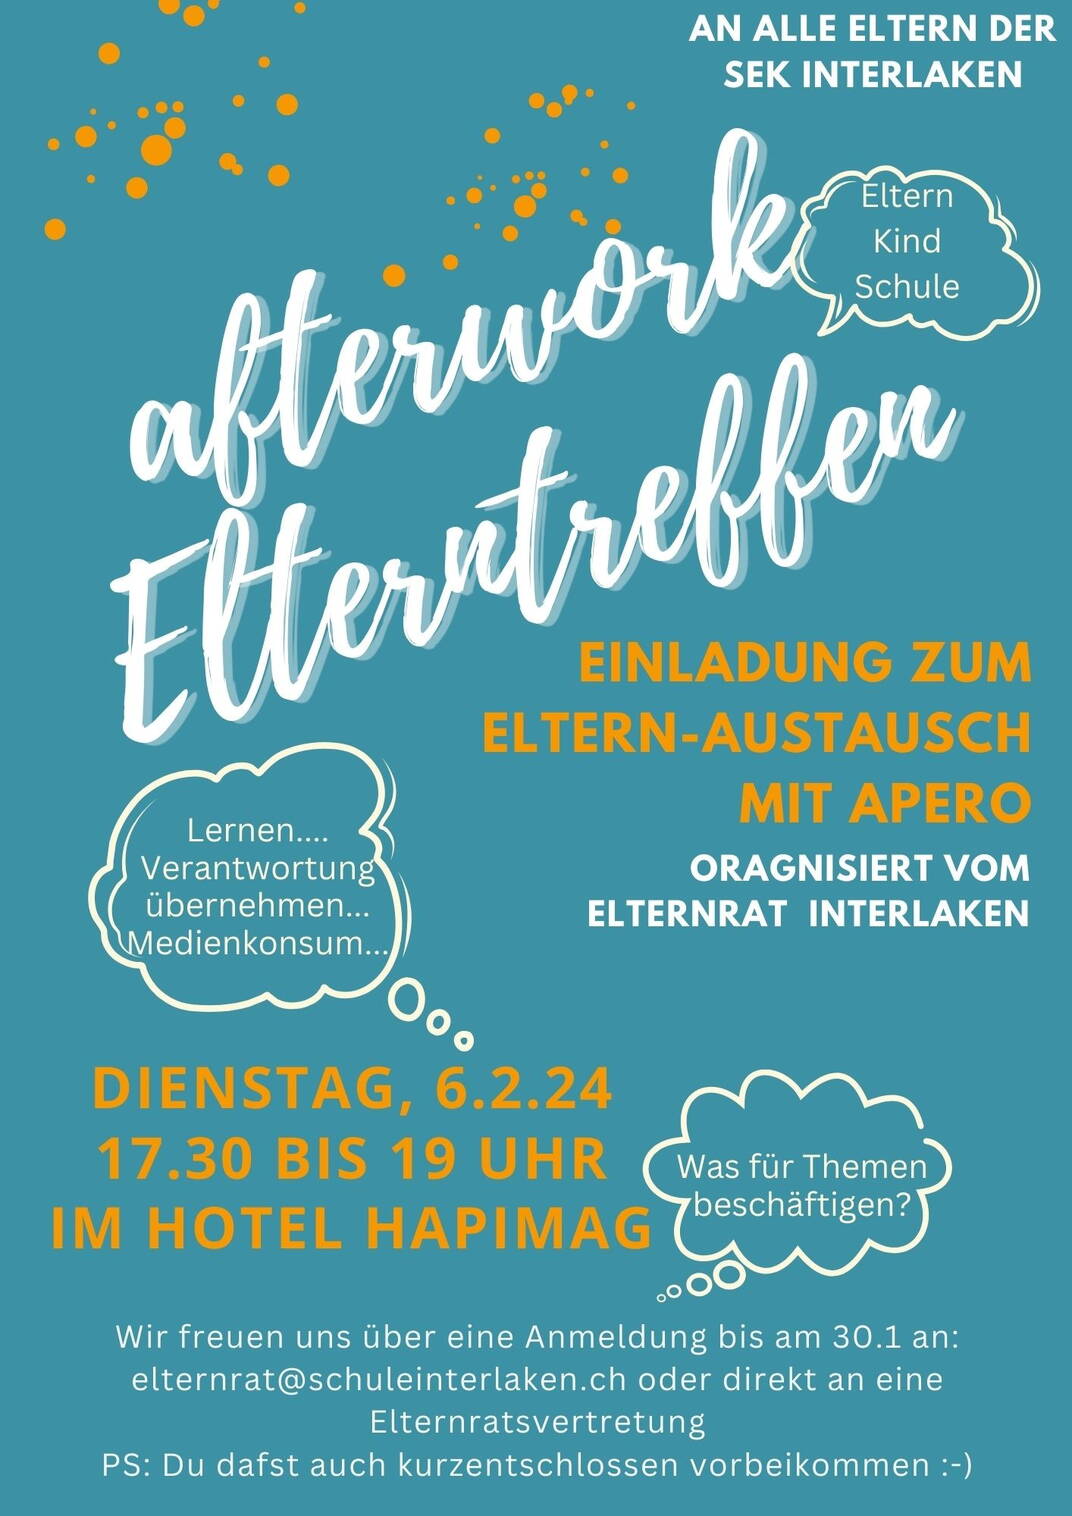 afterwork_elterntreffen_sek.jpg